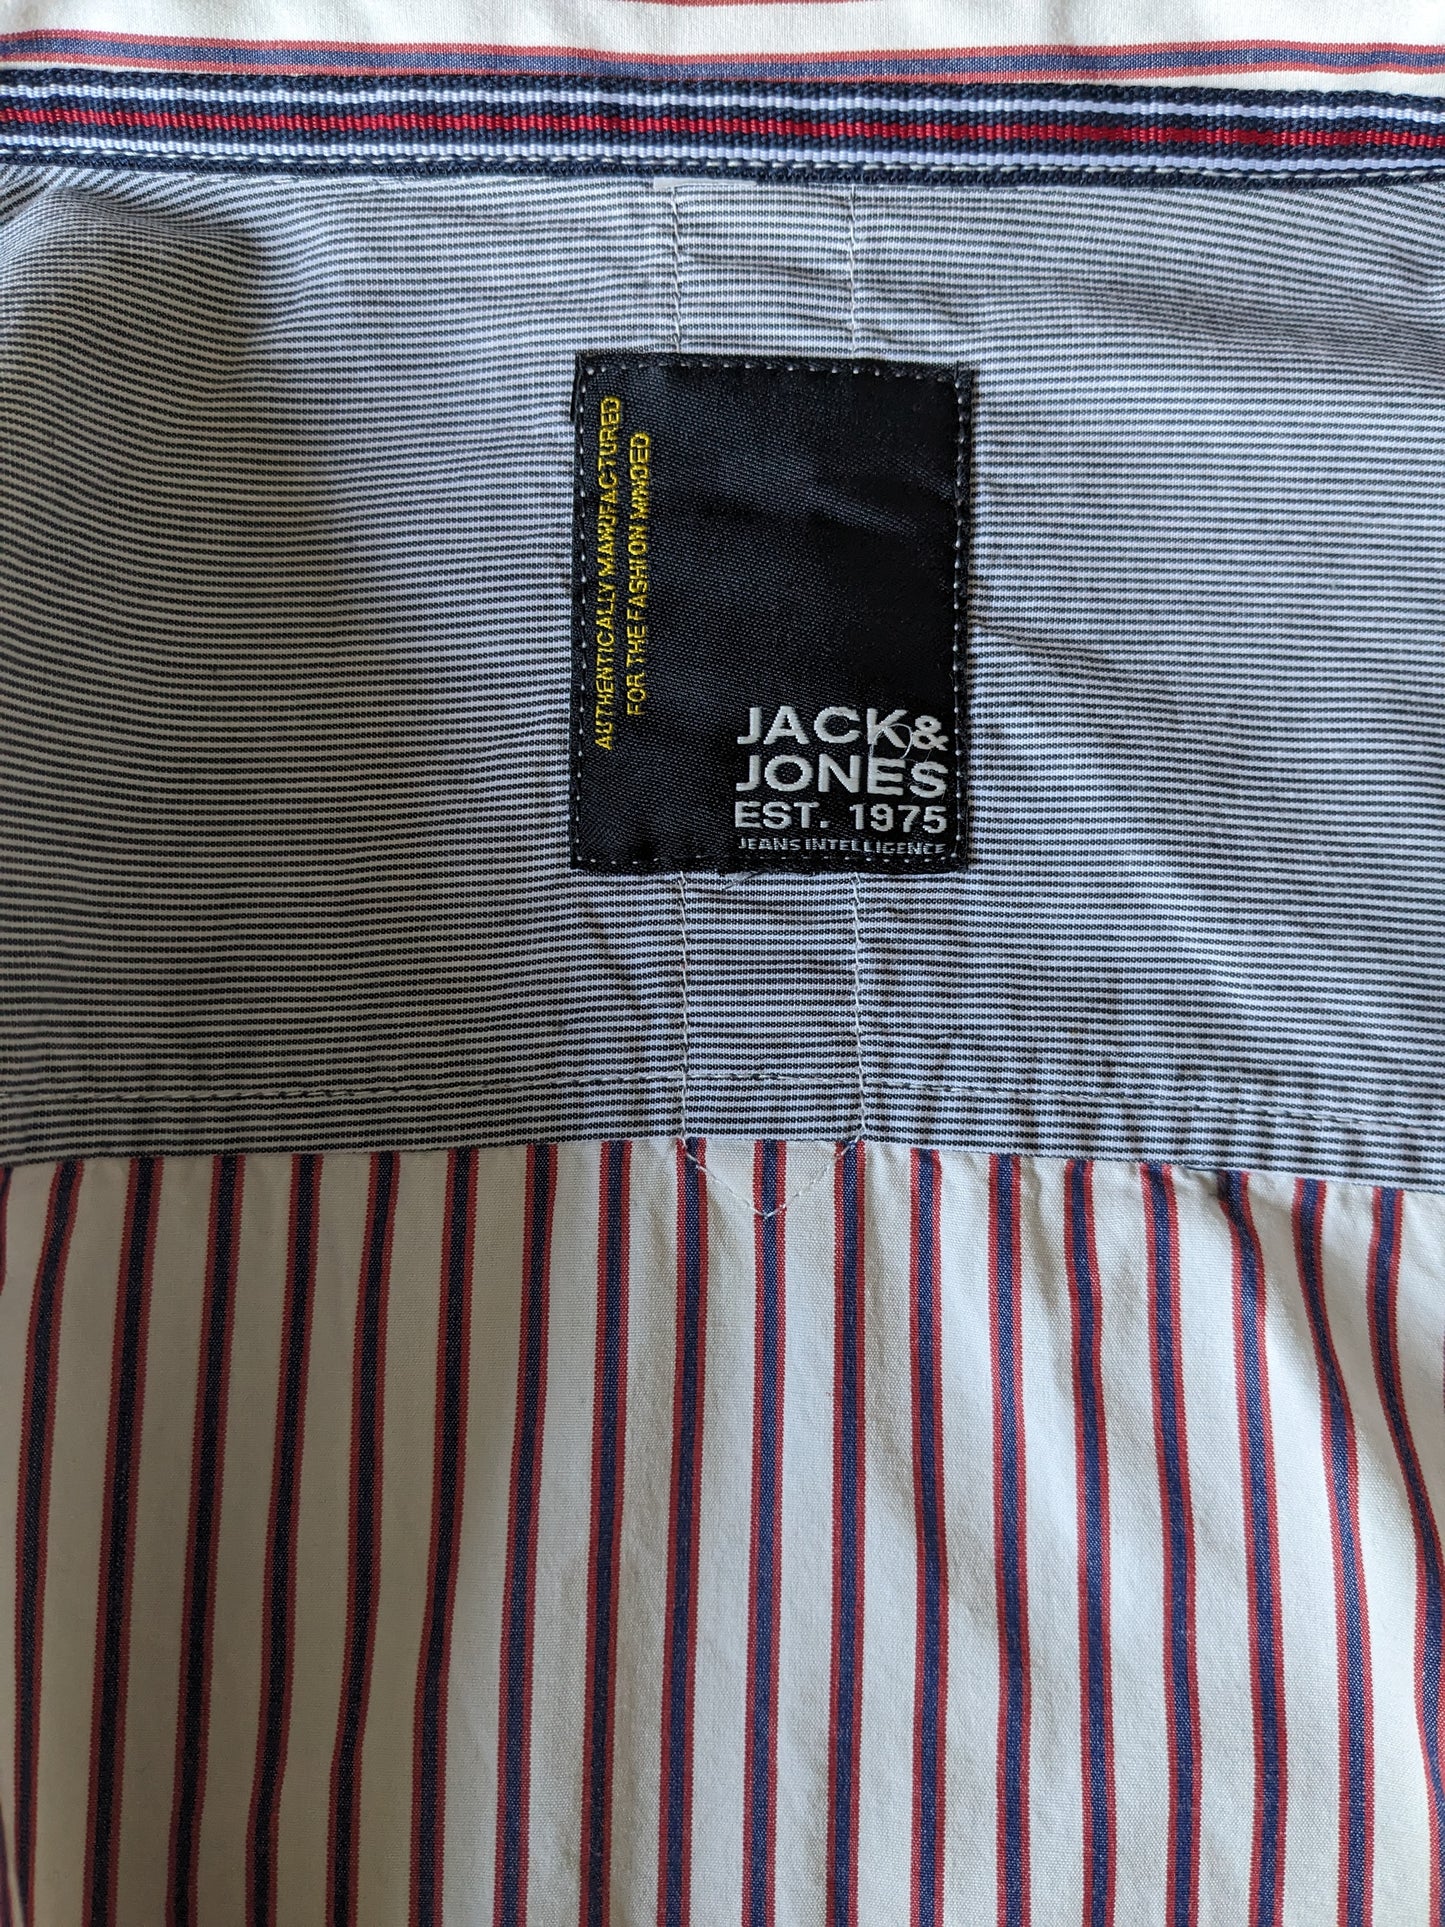 Jack & Jones overhemd. Beige Blauw Rood gestreept. Maat L.